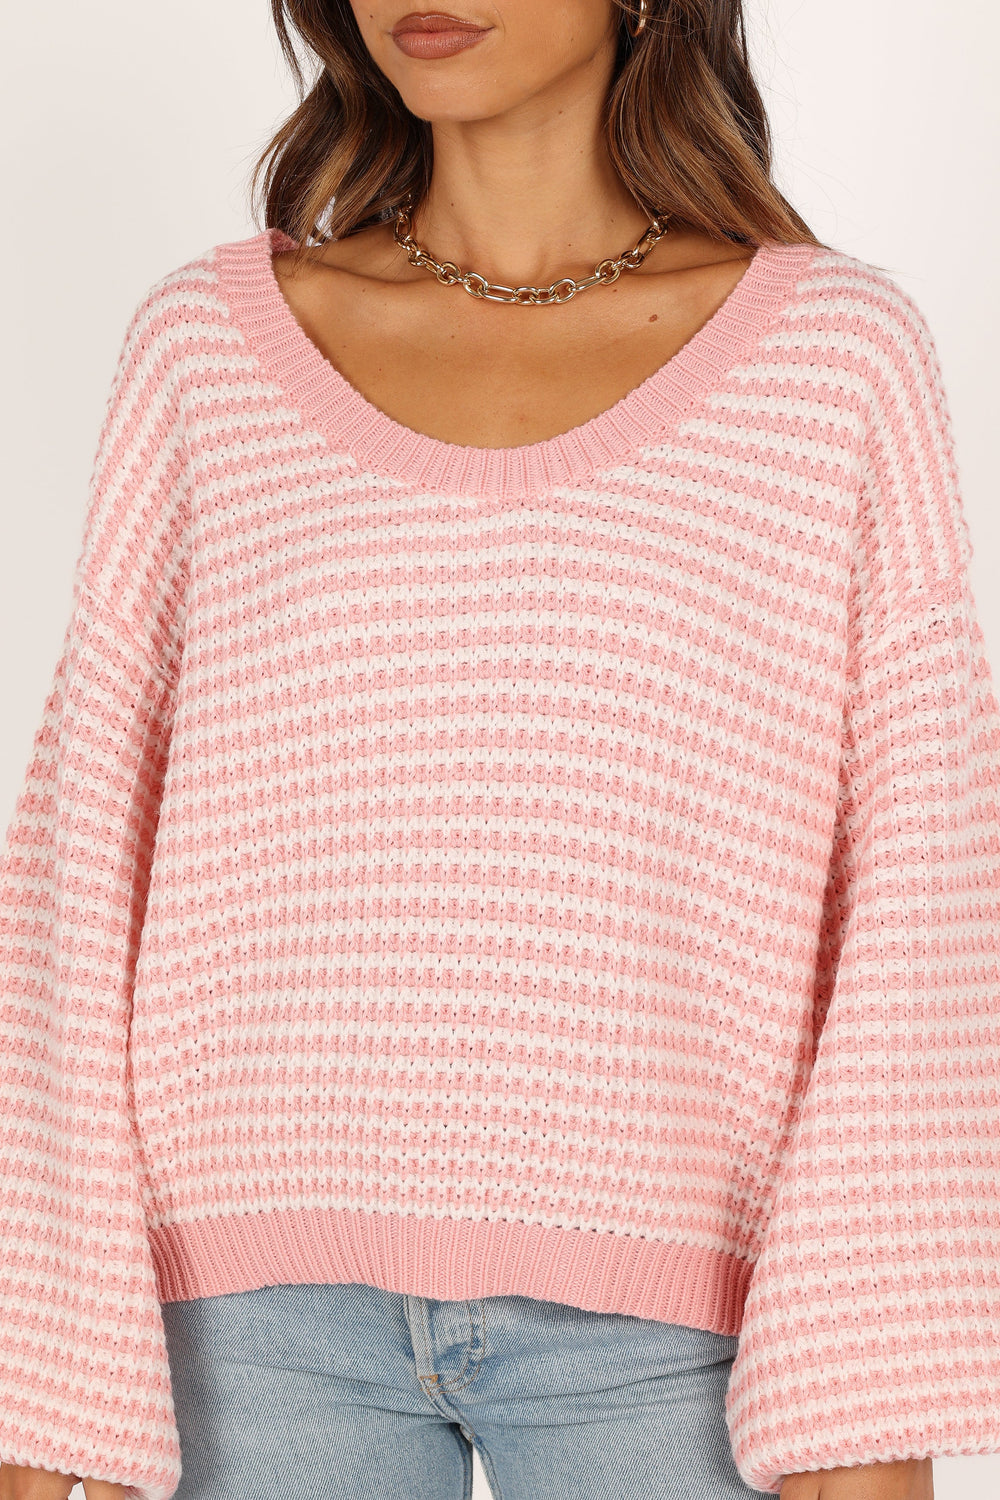 KNITWEAR @Becca Crewneck Waffle Stitch Stripe Knit Sweater - Pink